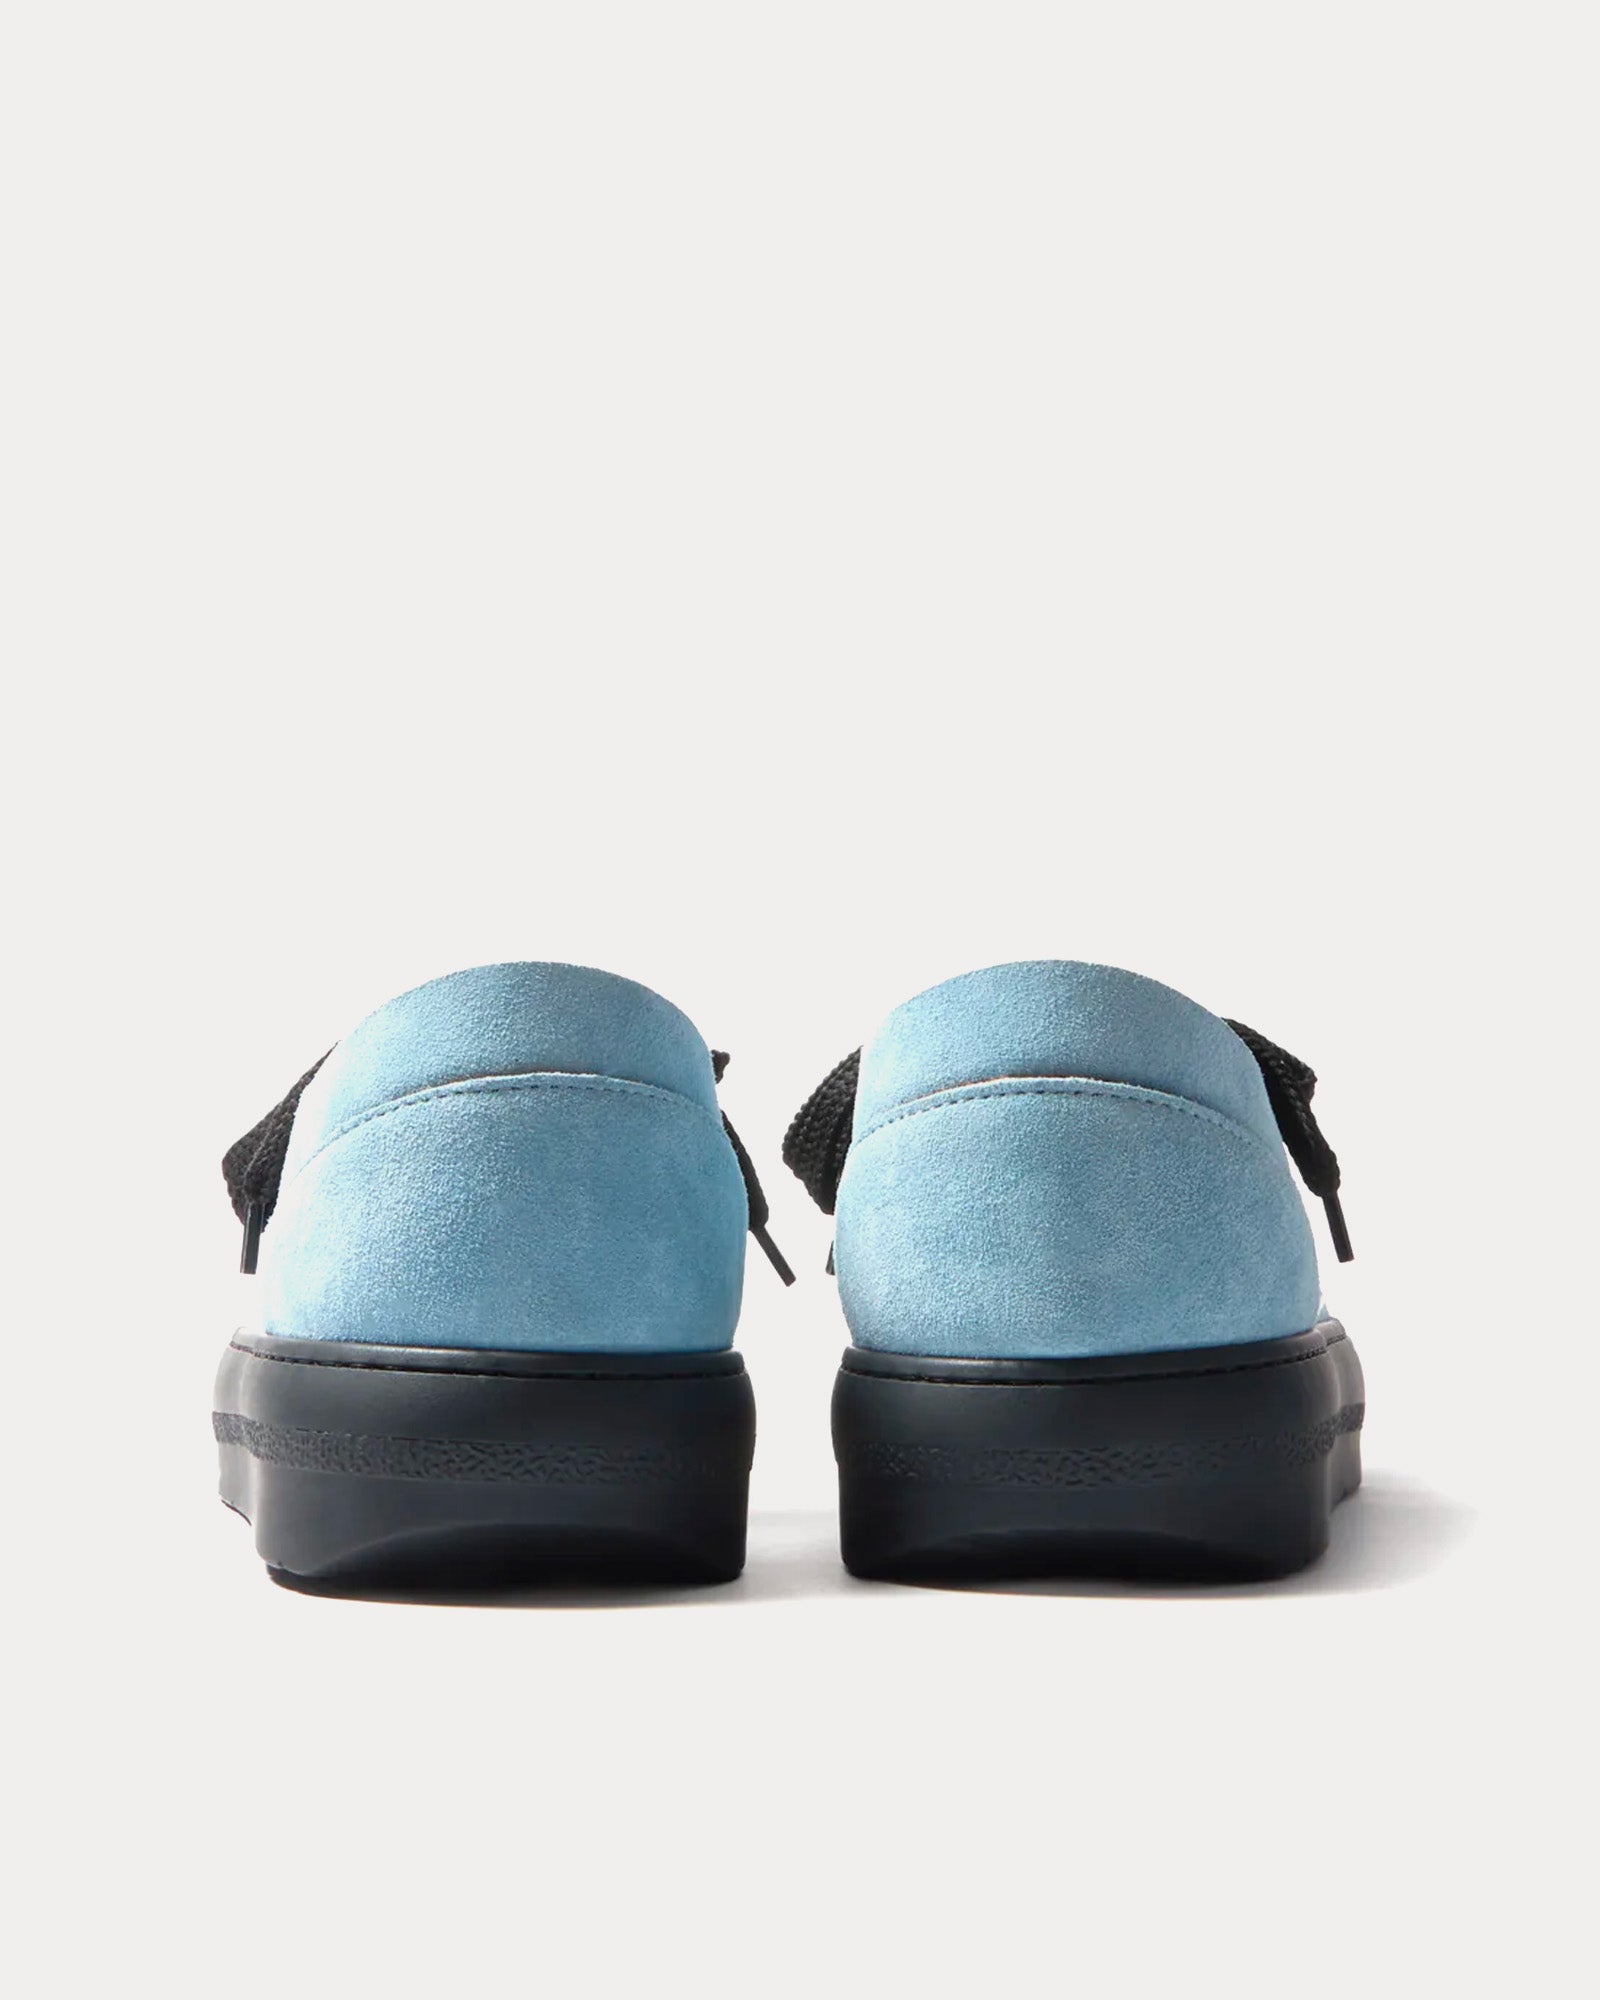 Sunnei - Dreamy Suede Light Sky Blue Low Top Sneakers